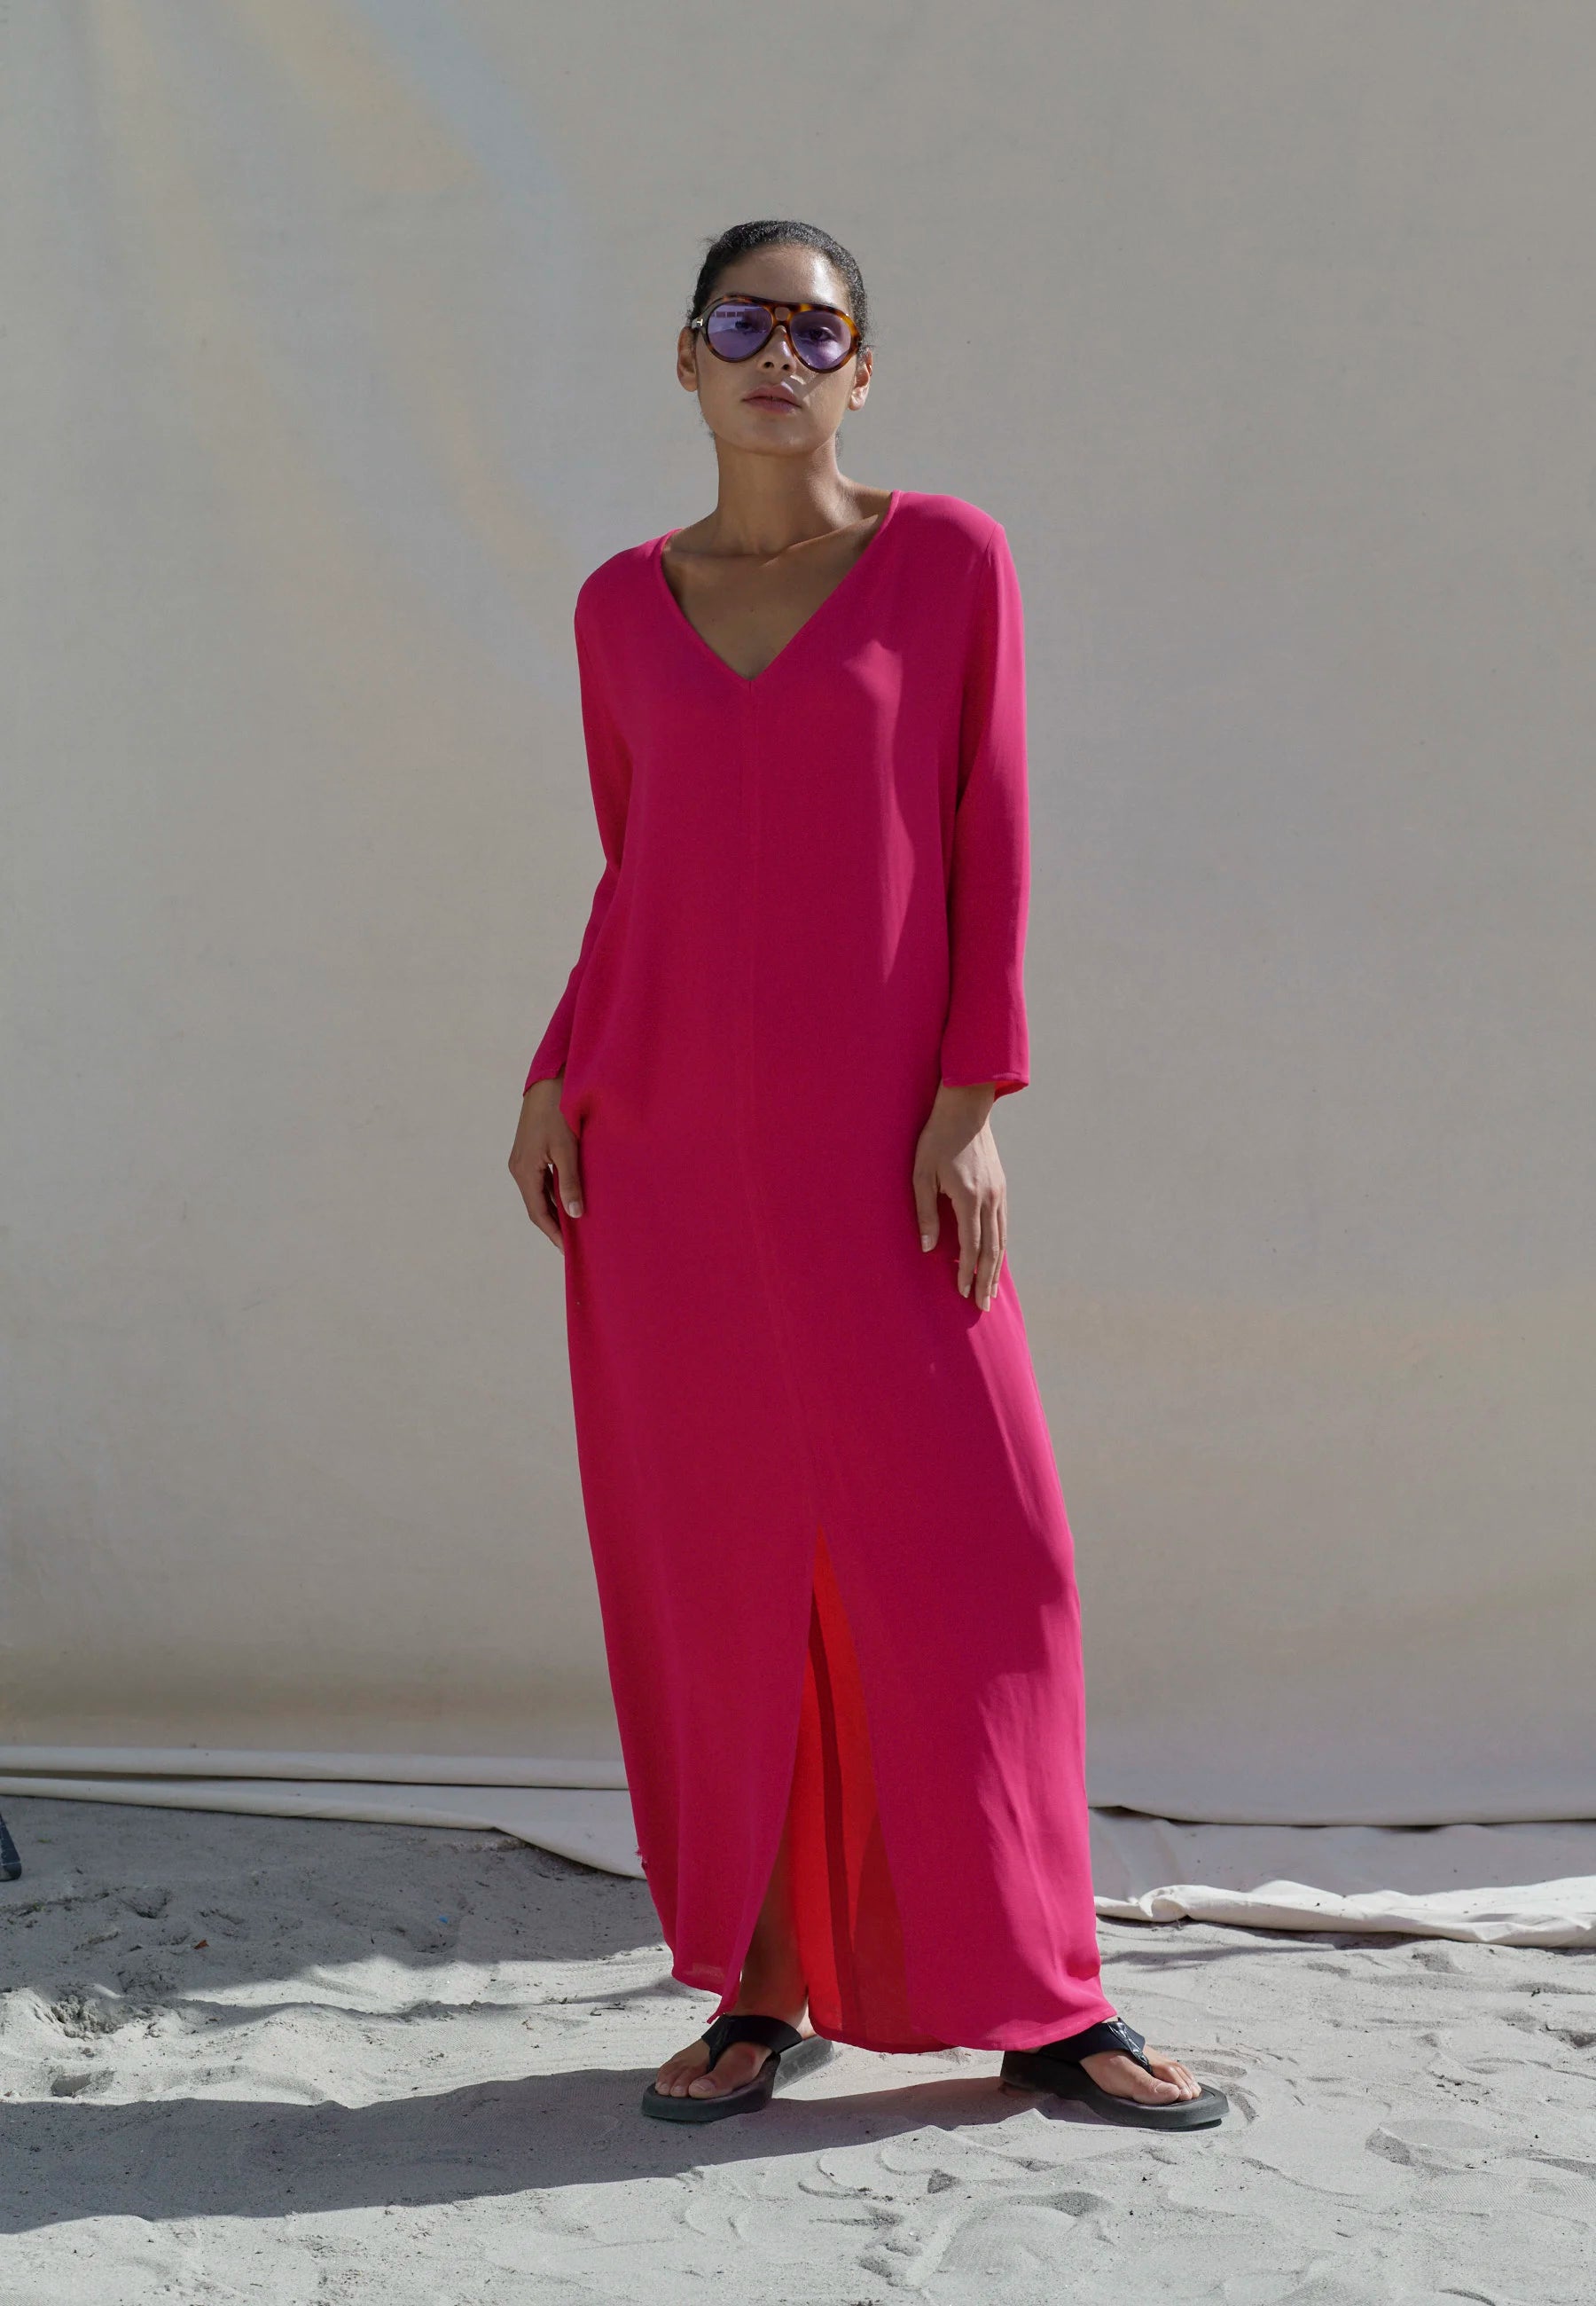 Mia Dress - Pink